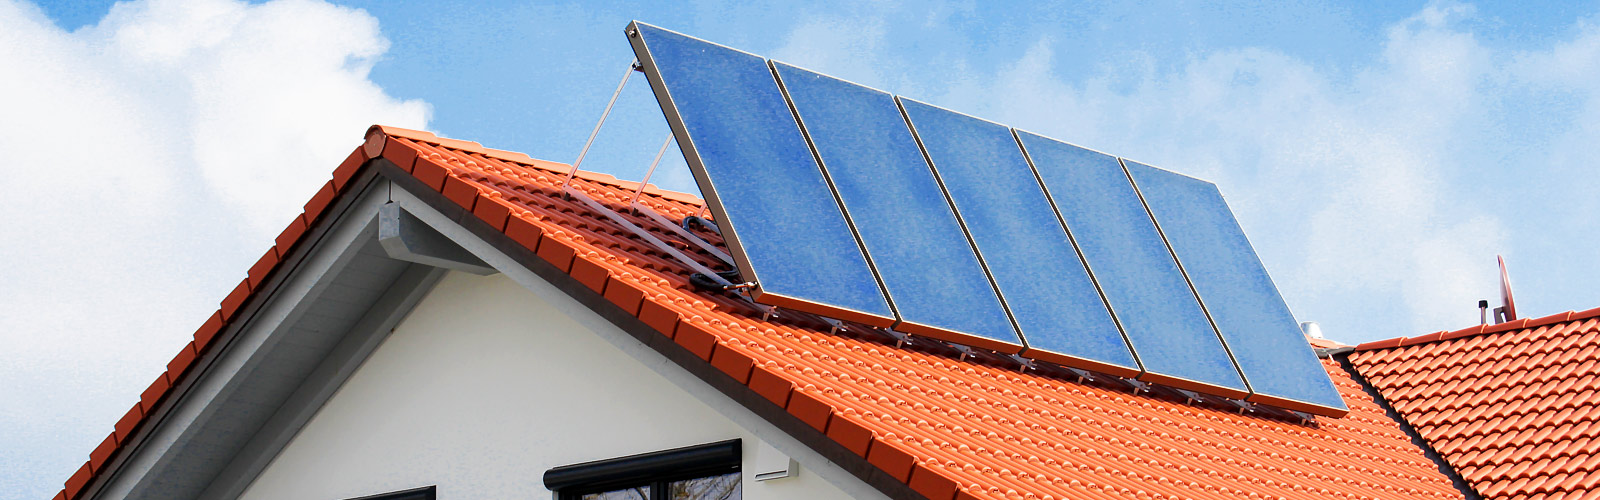 Photovoltaik - Solaranlagen Solarthermie-Anlagen 